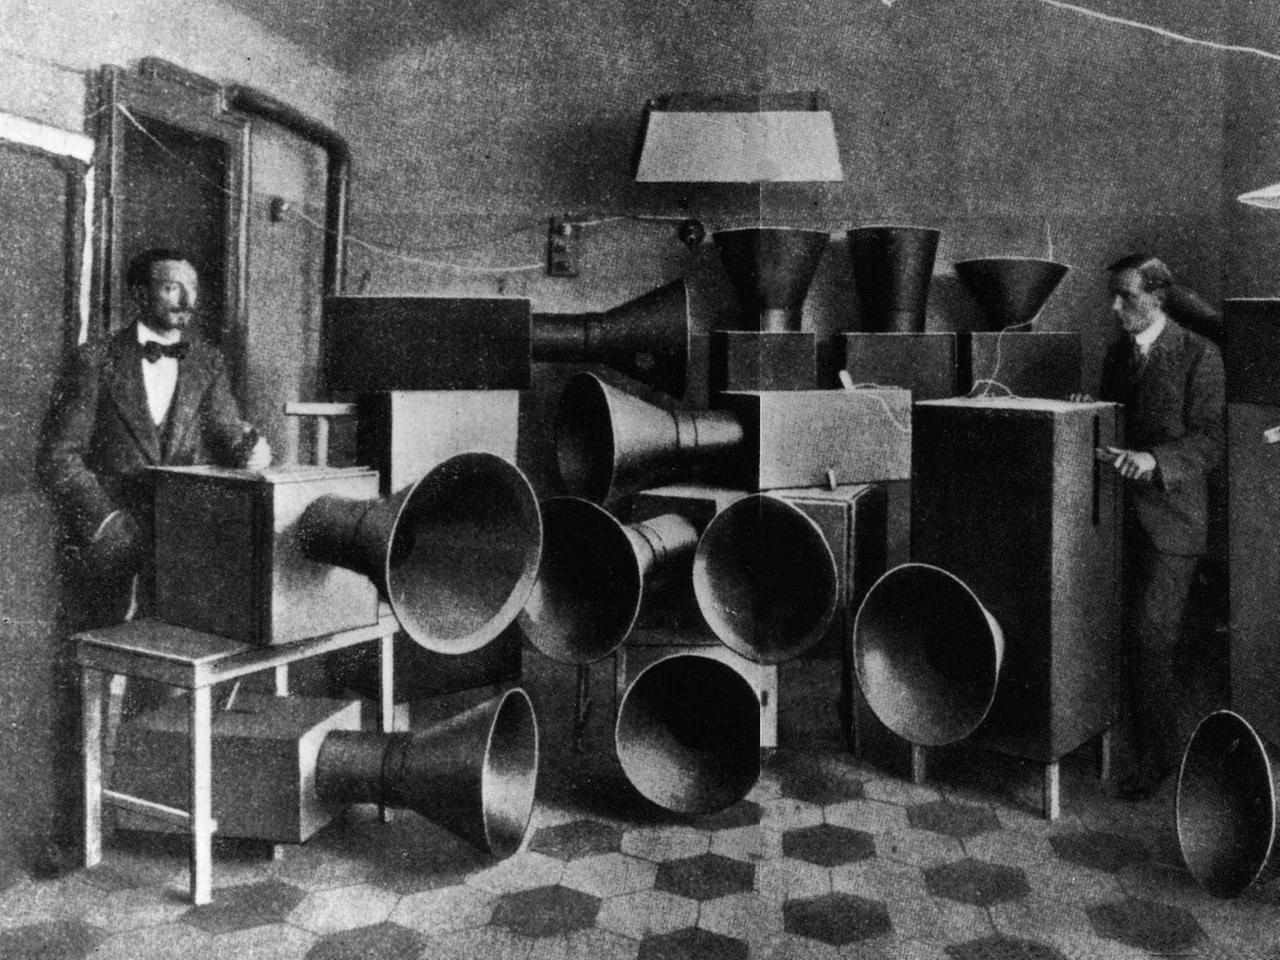 Luigi Russolo und sein Assistent Piatti mit den Intonarumori-Geräuschmaschinen 1914. Das Intonarumori oder "Instrument zur Erzeugung von Geräuschen" wurde 1913 vom futuristischen Komponisten Luigi Russolo (1885 1947) entwickelt. 